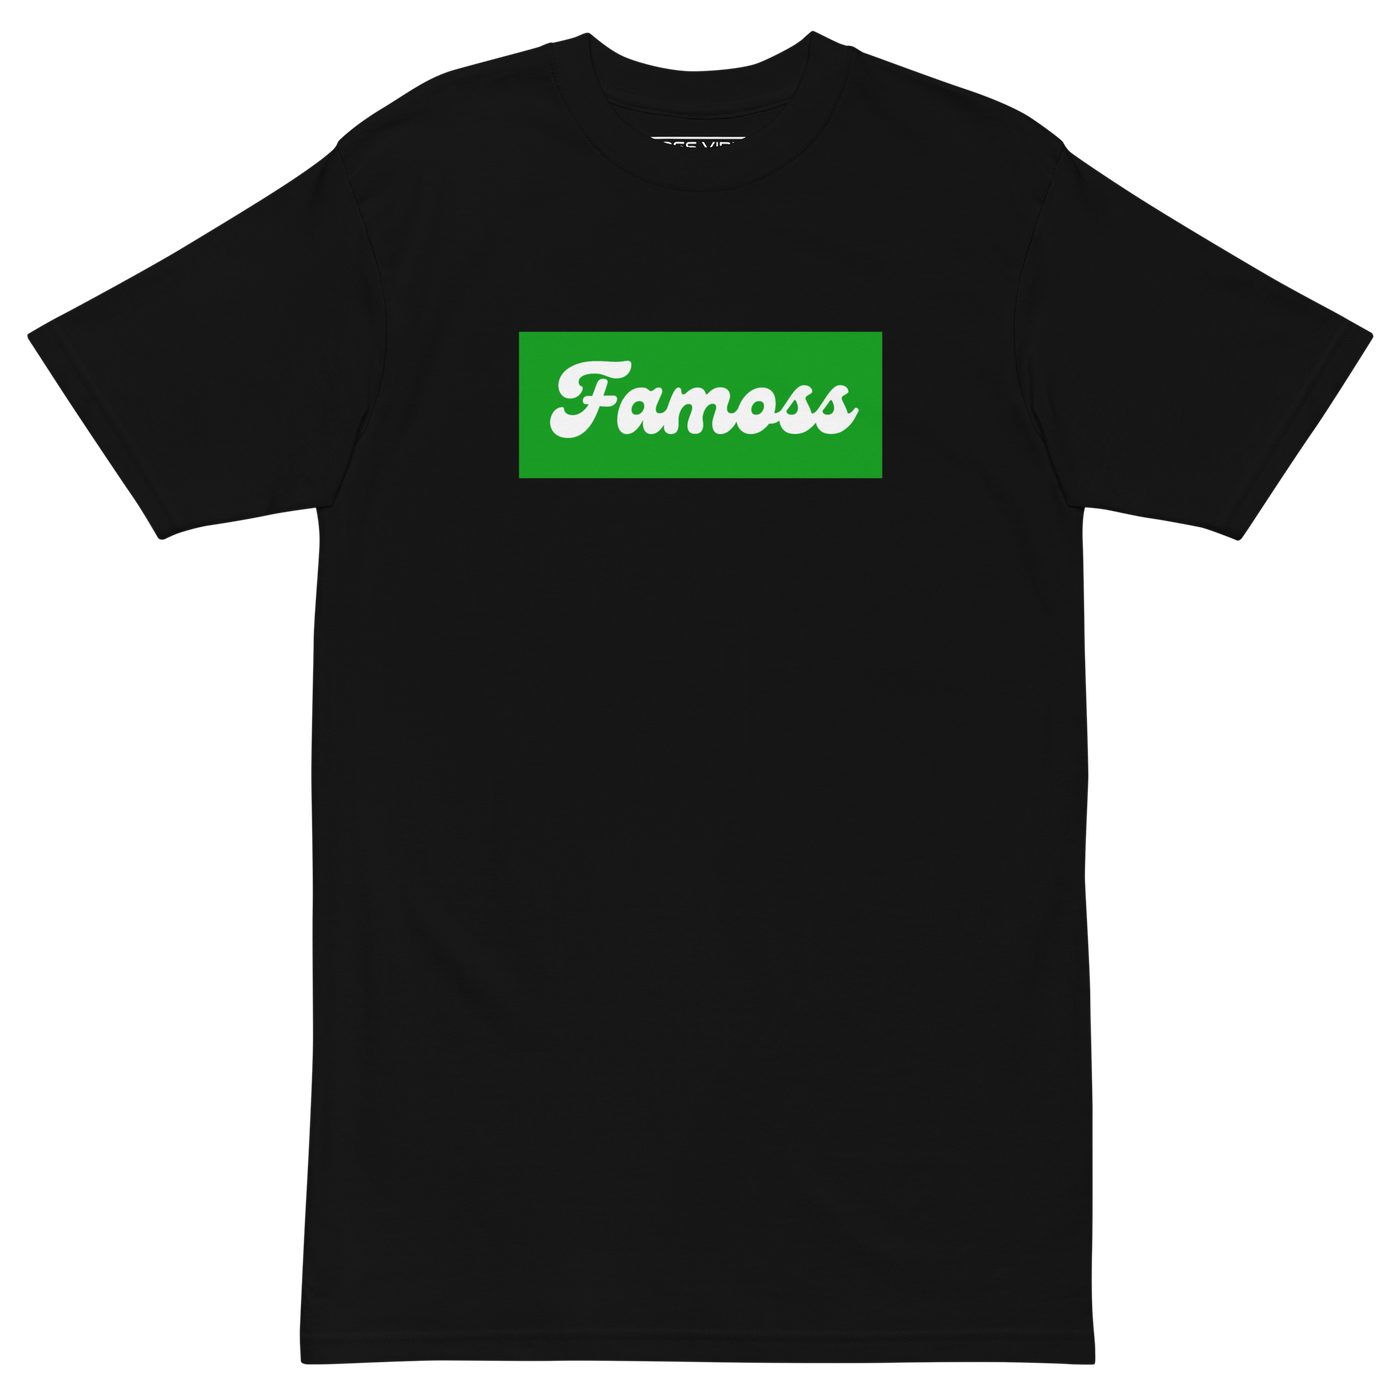 Famoss Green Block T-shirt